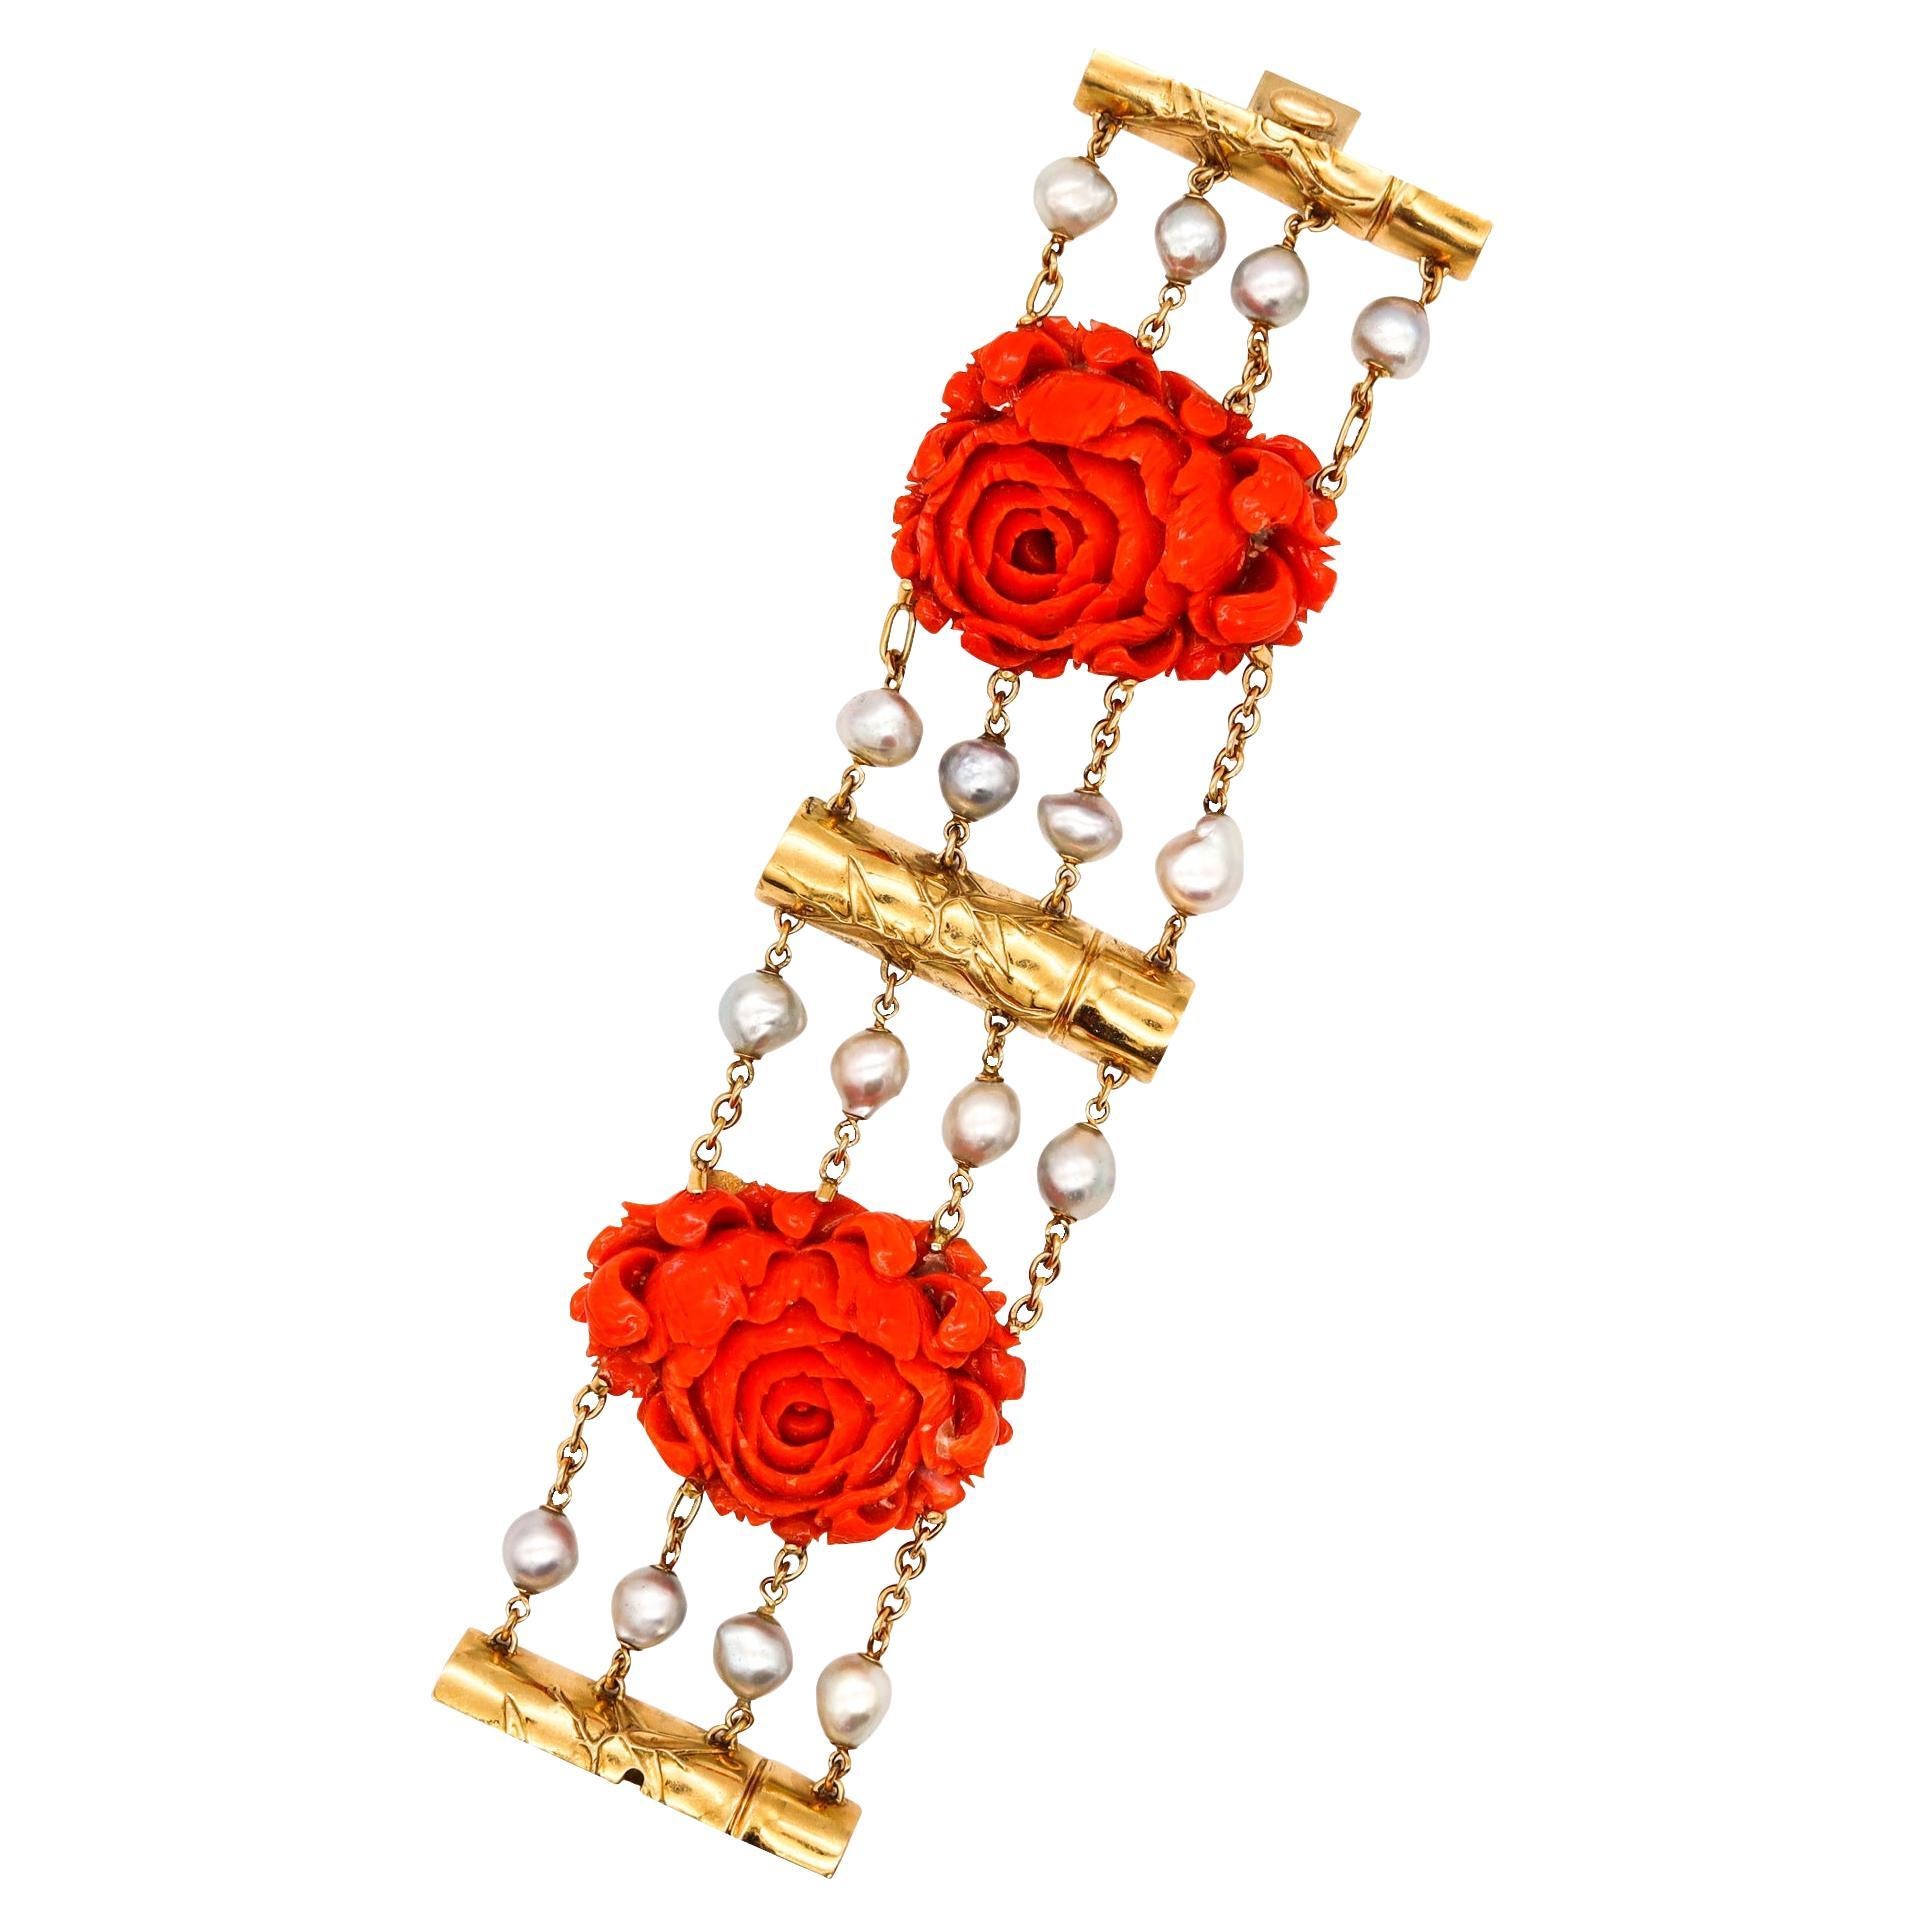 Seemann Schepps 1970 New York Seltenes Armband aus 18 Karat Gold mit roter Koralle und Perle